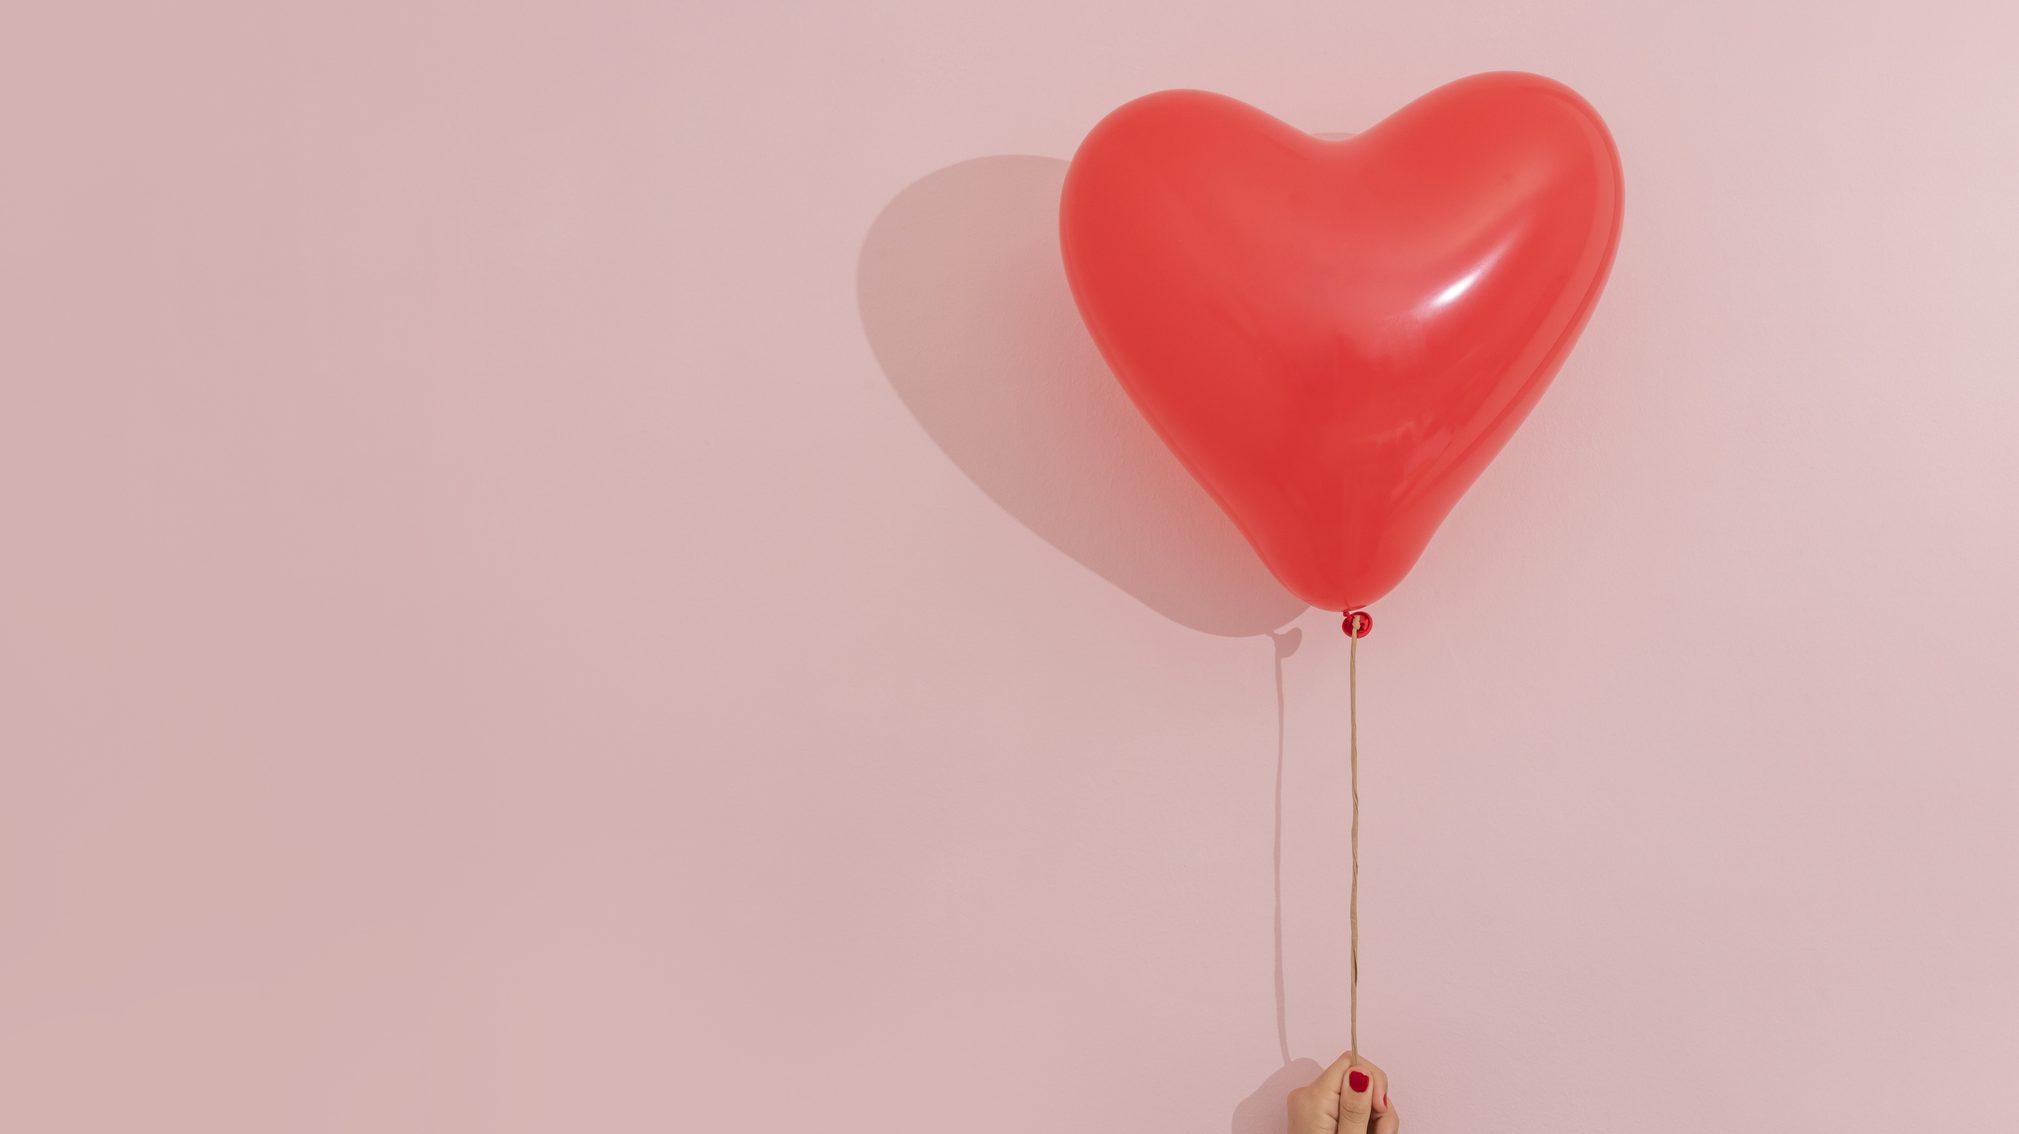 5 regalos originales para sorprender a tu pareja este San Valentín - Cadena  Dial